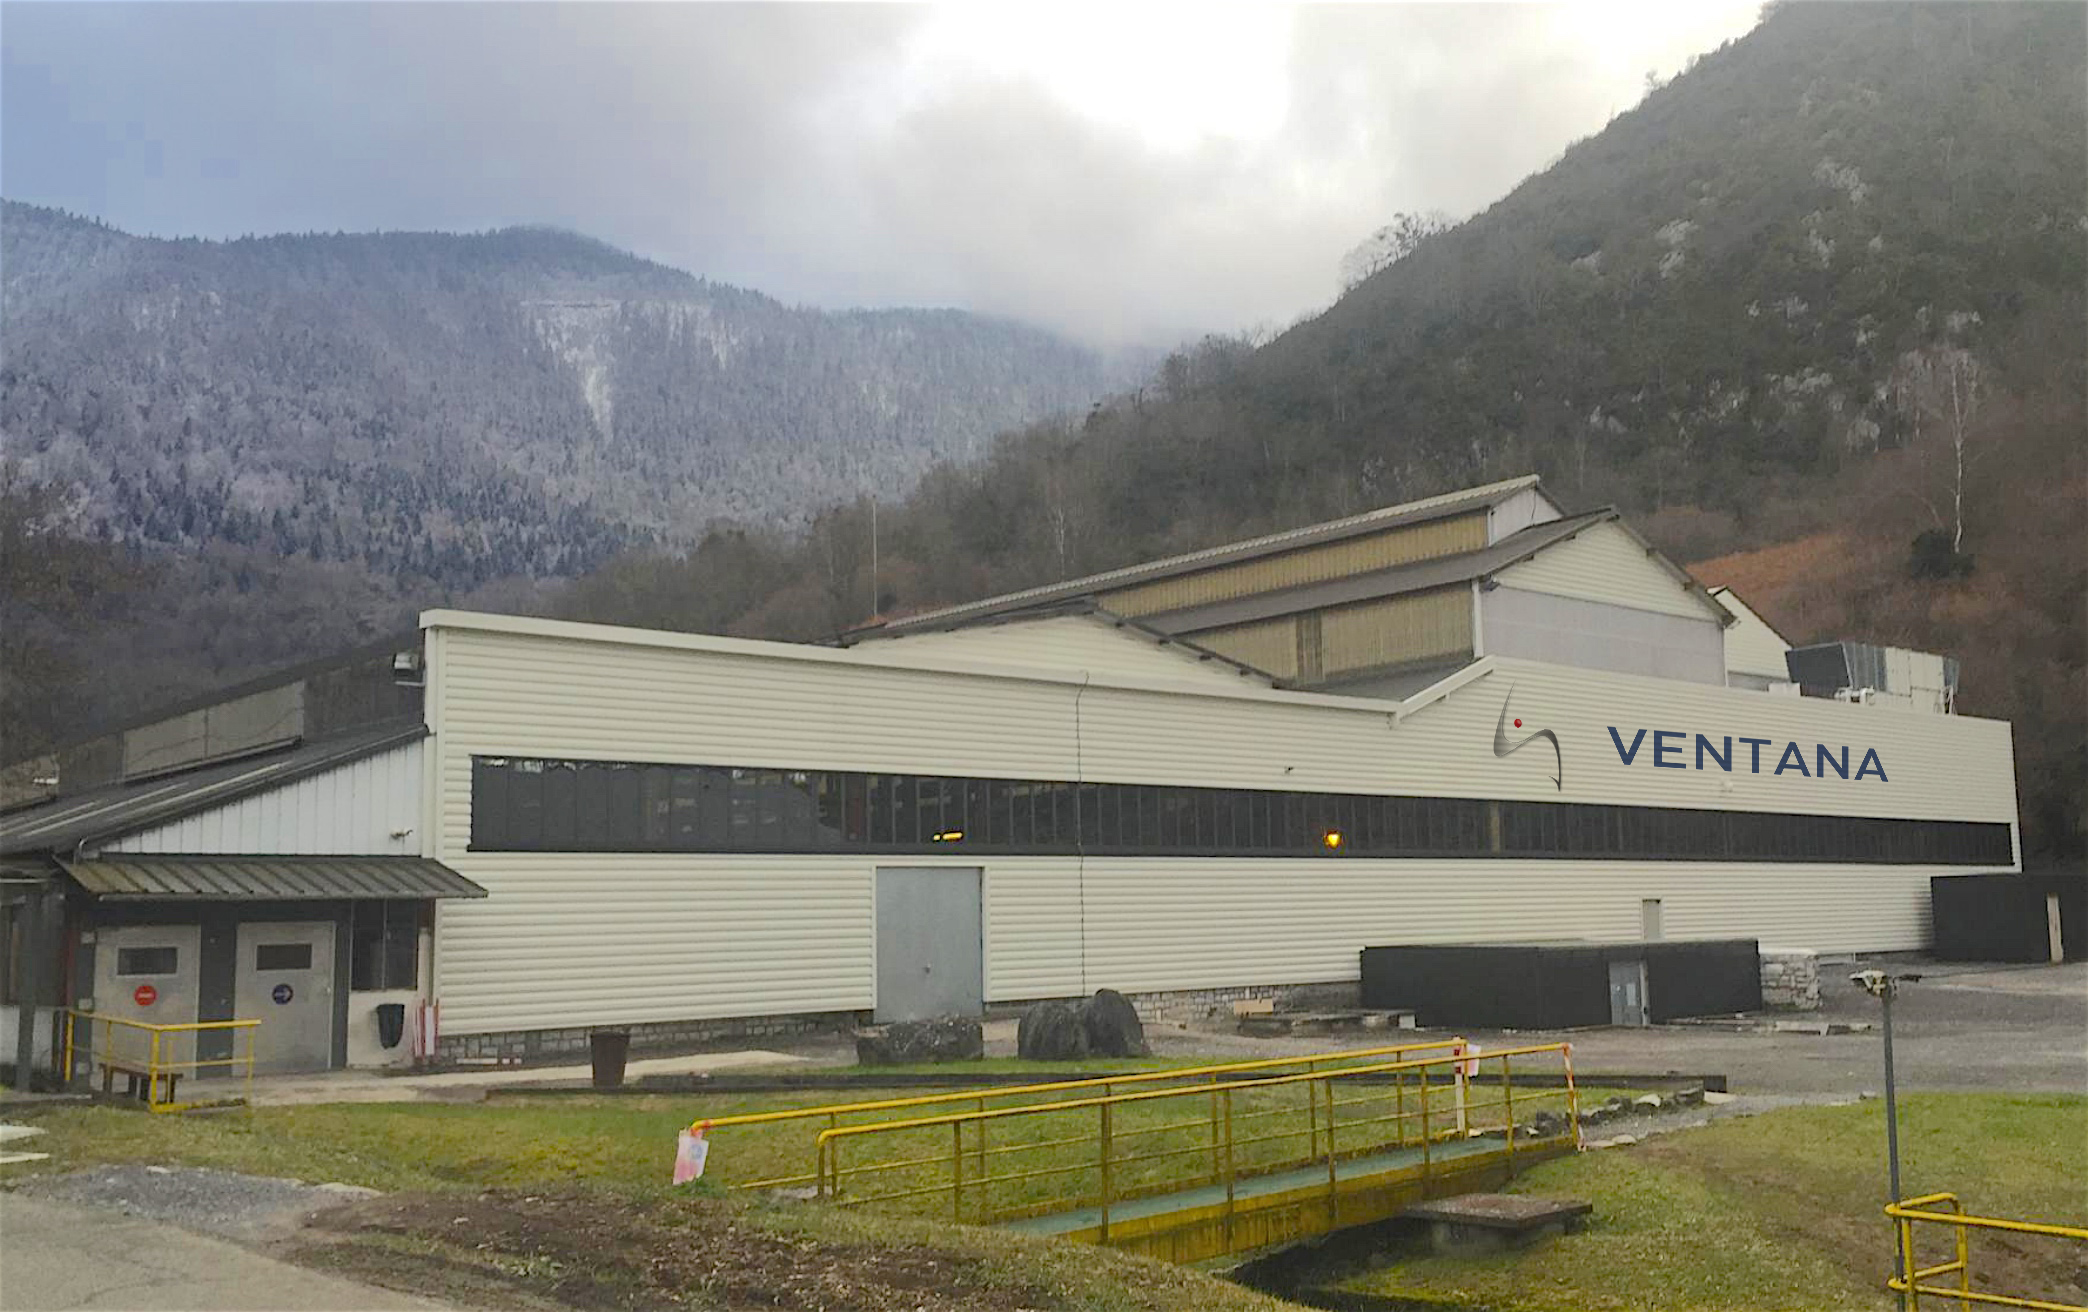 Ventana Foundry Arudy est la première entreprise des Pyrénées Atlantiques à bénéficier des fonds de l’Etat pour la modernisation aéronautique et automobile